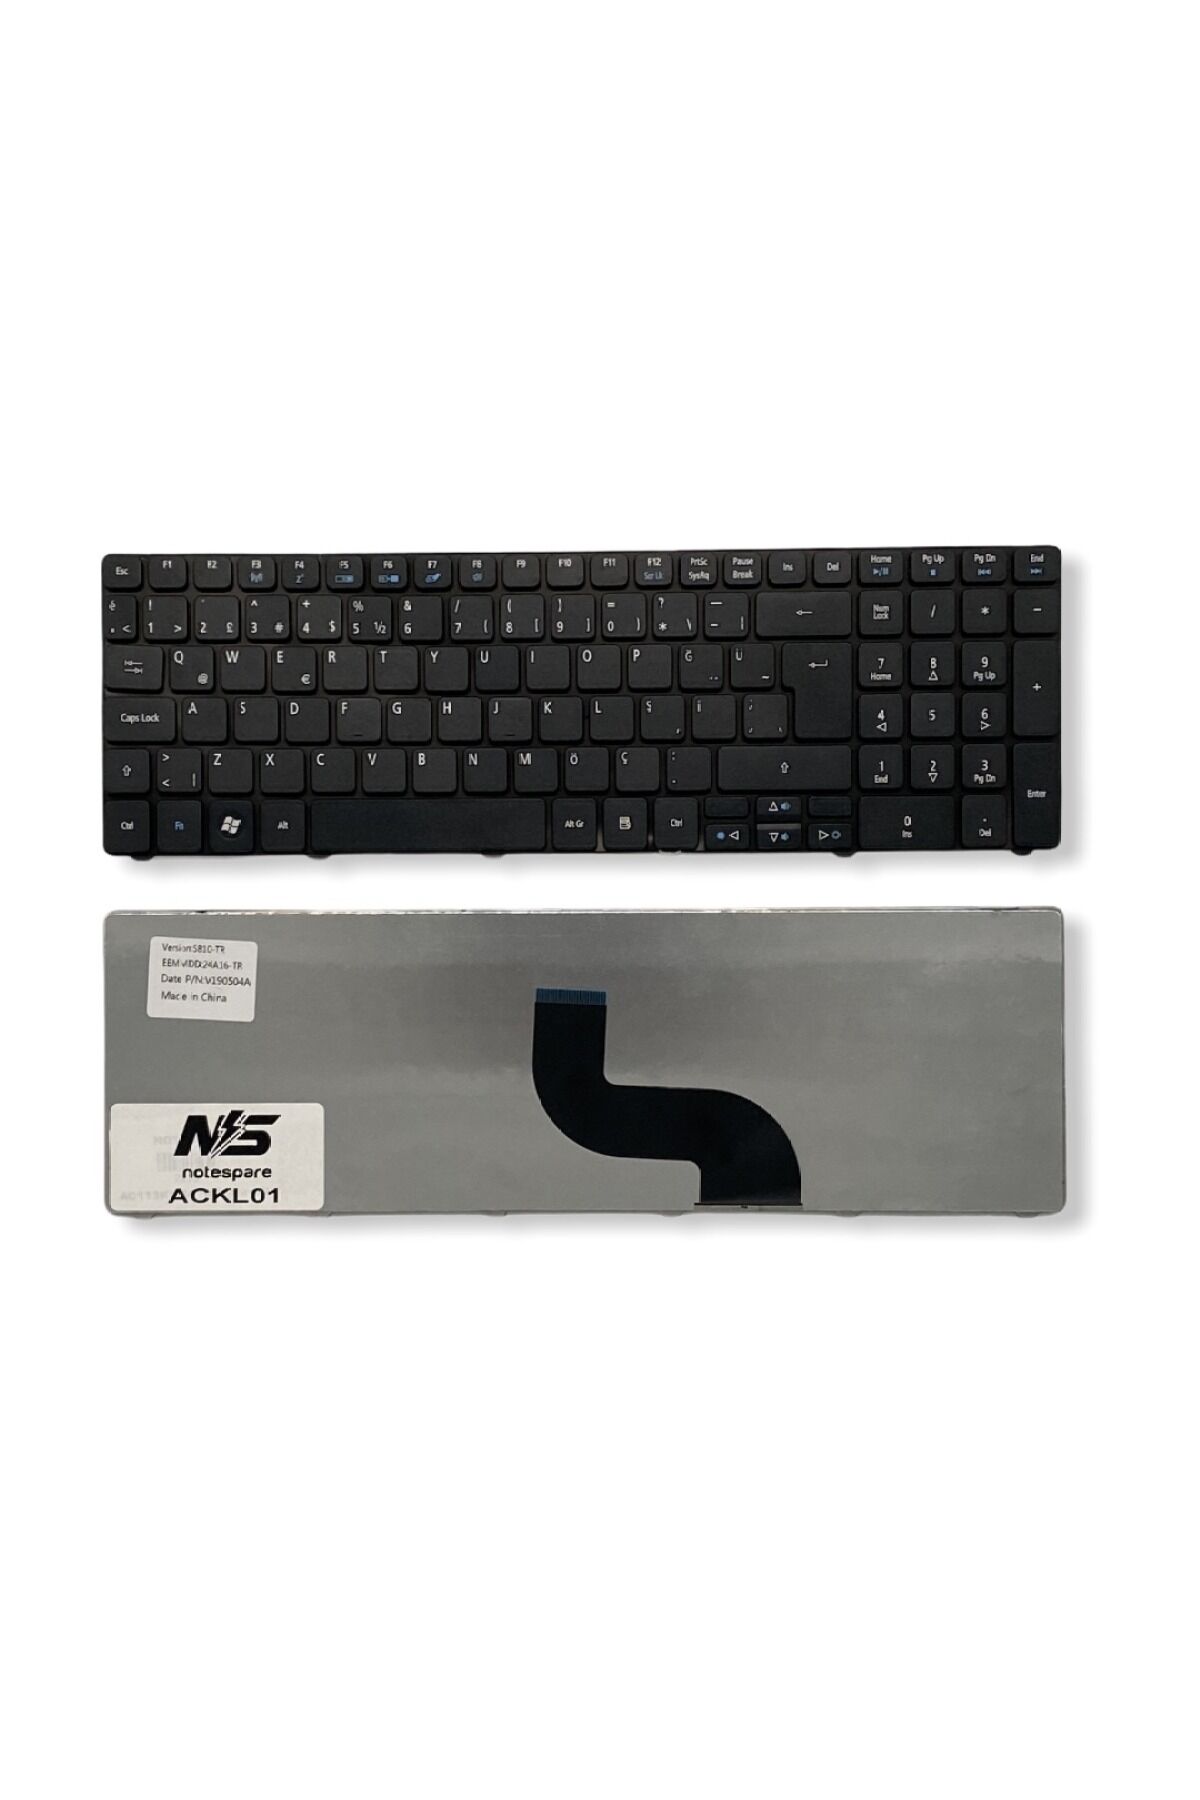 Acer ile Uyumlu 5738-643G25MN, 5738DG-664G32Mn, 5738DZG-444G50Mn Notebook Klavye Siyah TR